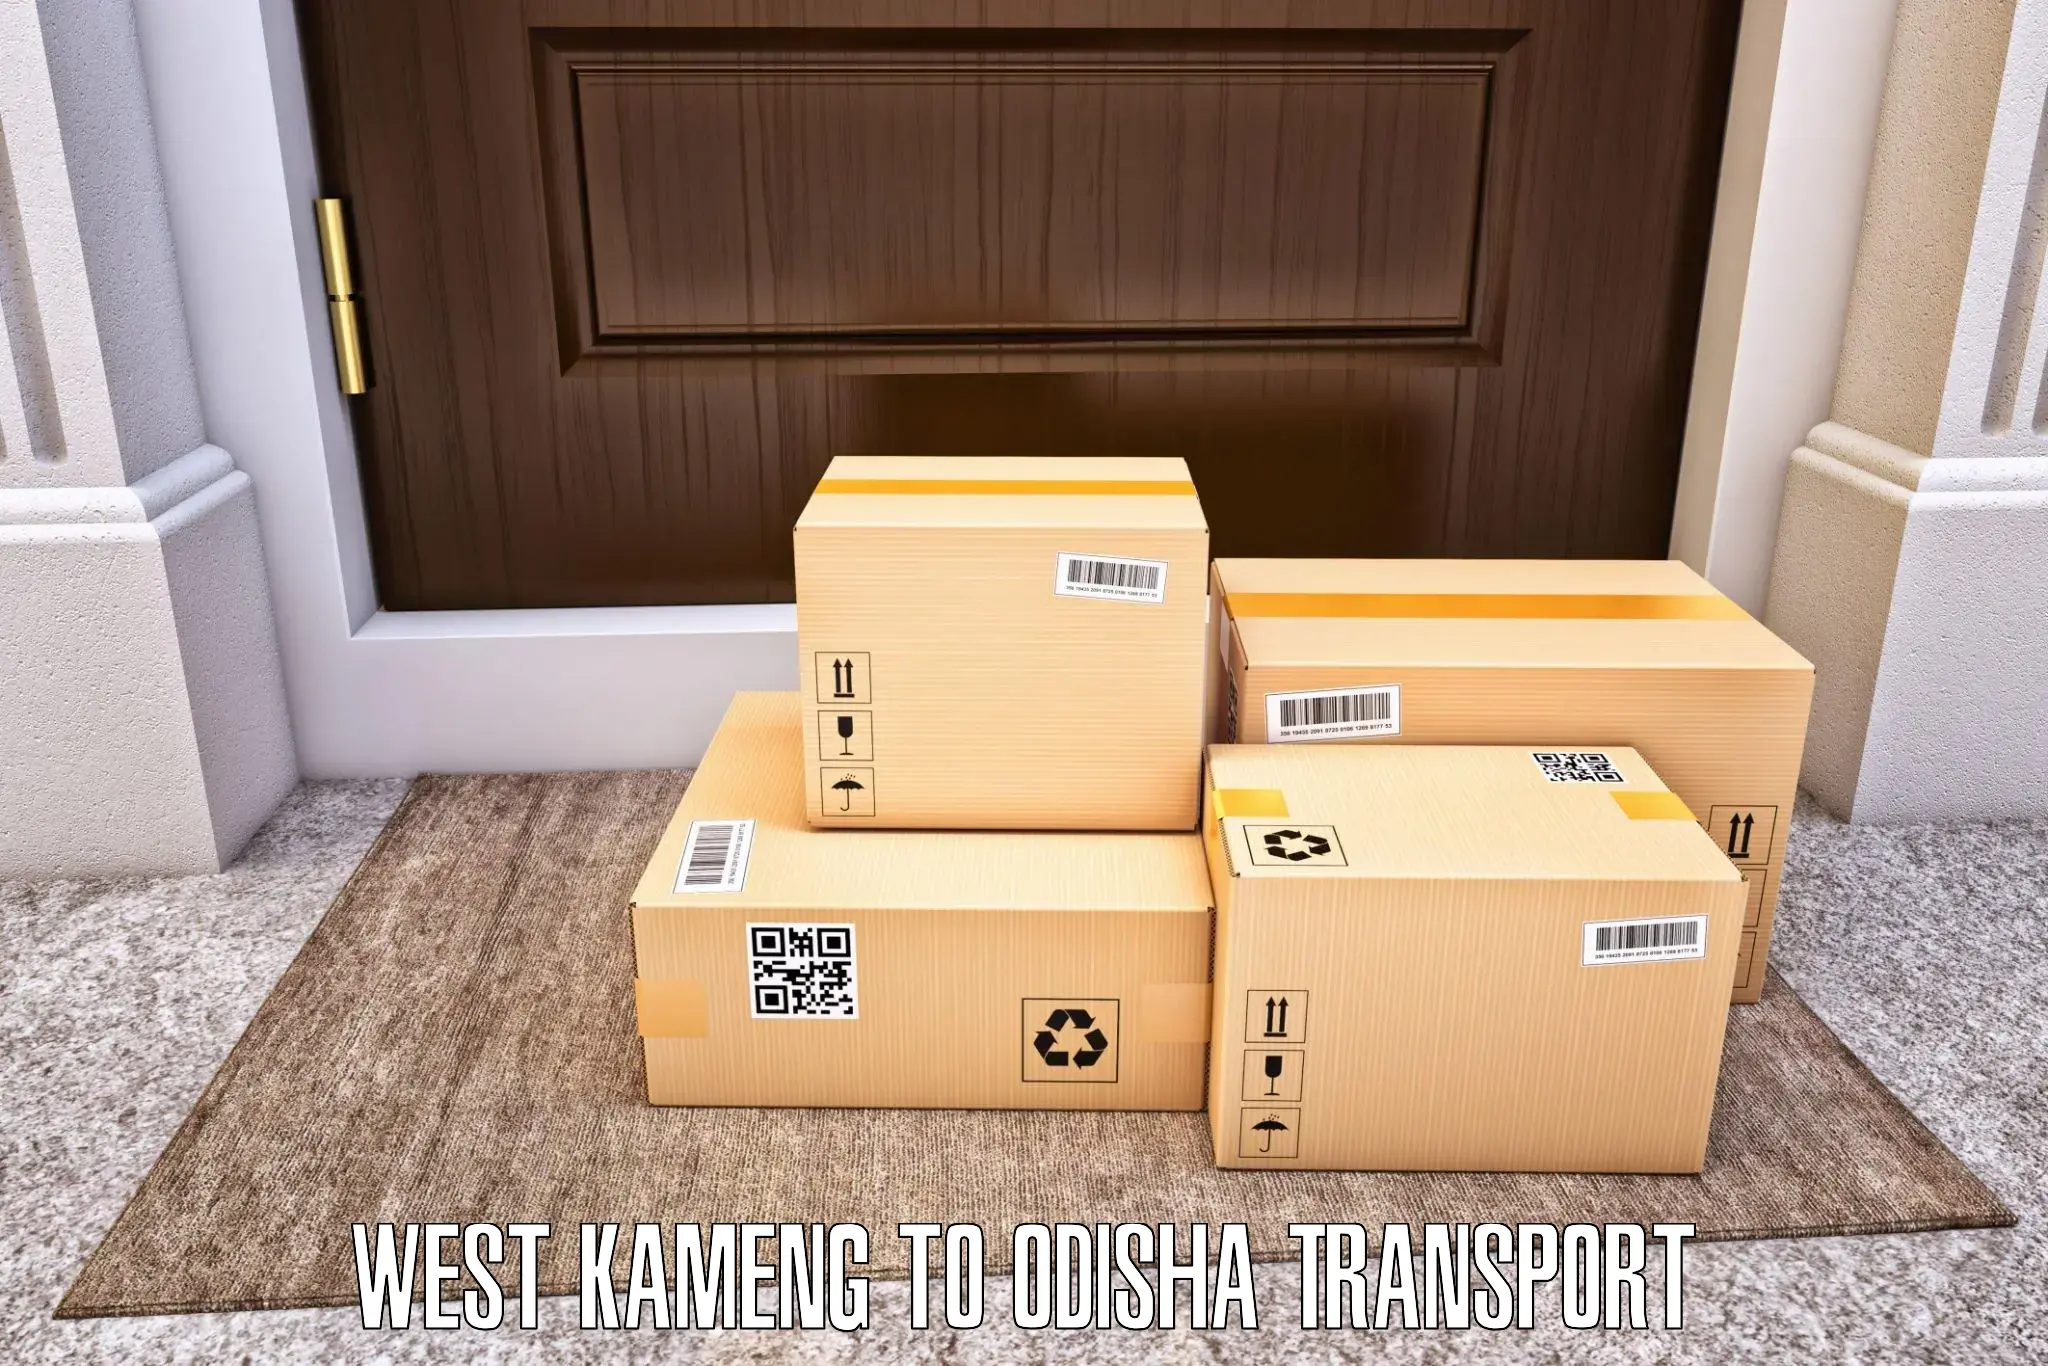 Vehicle transport services West Kameng to Kishorenagar